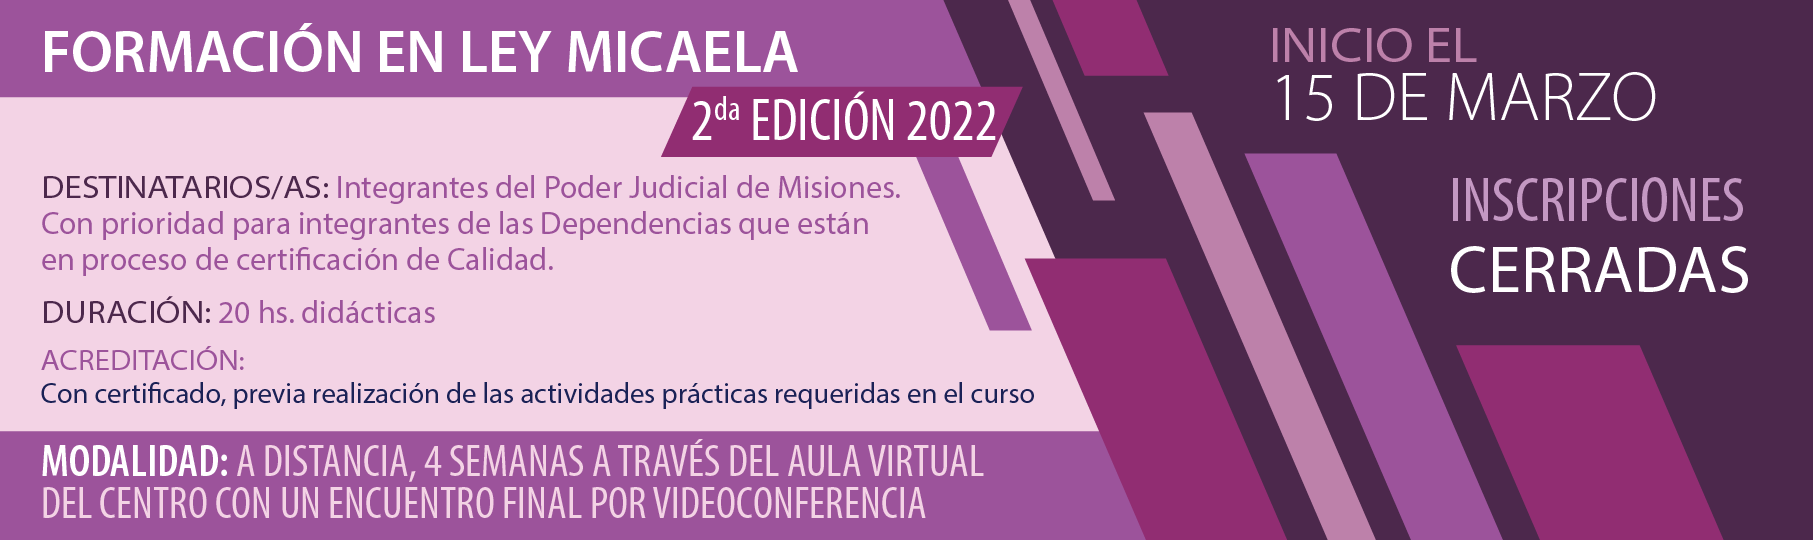 InC_P2_Formacion_en_Ley_Micaela_2022-01